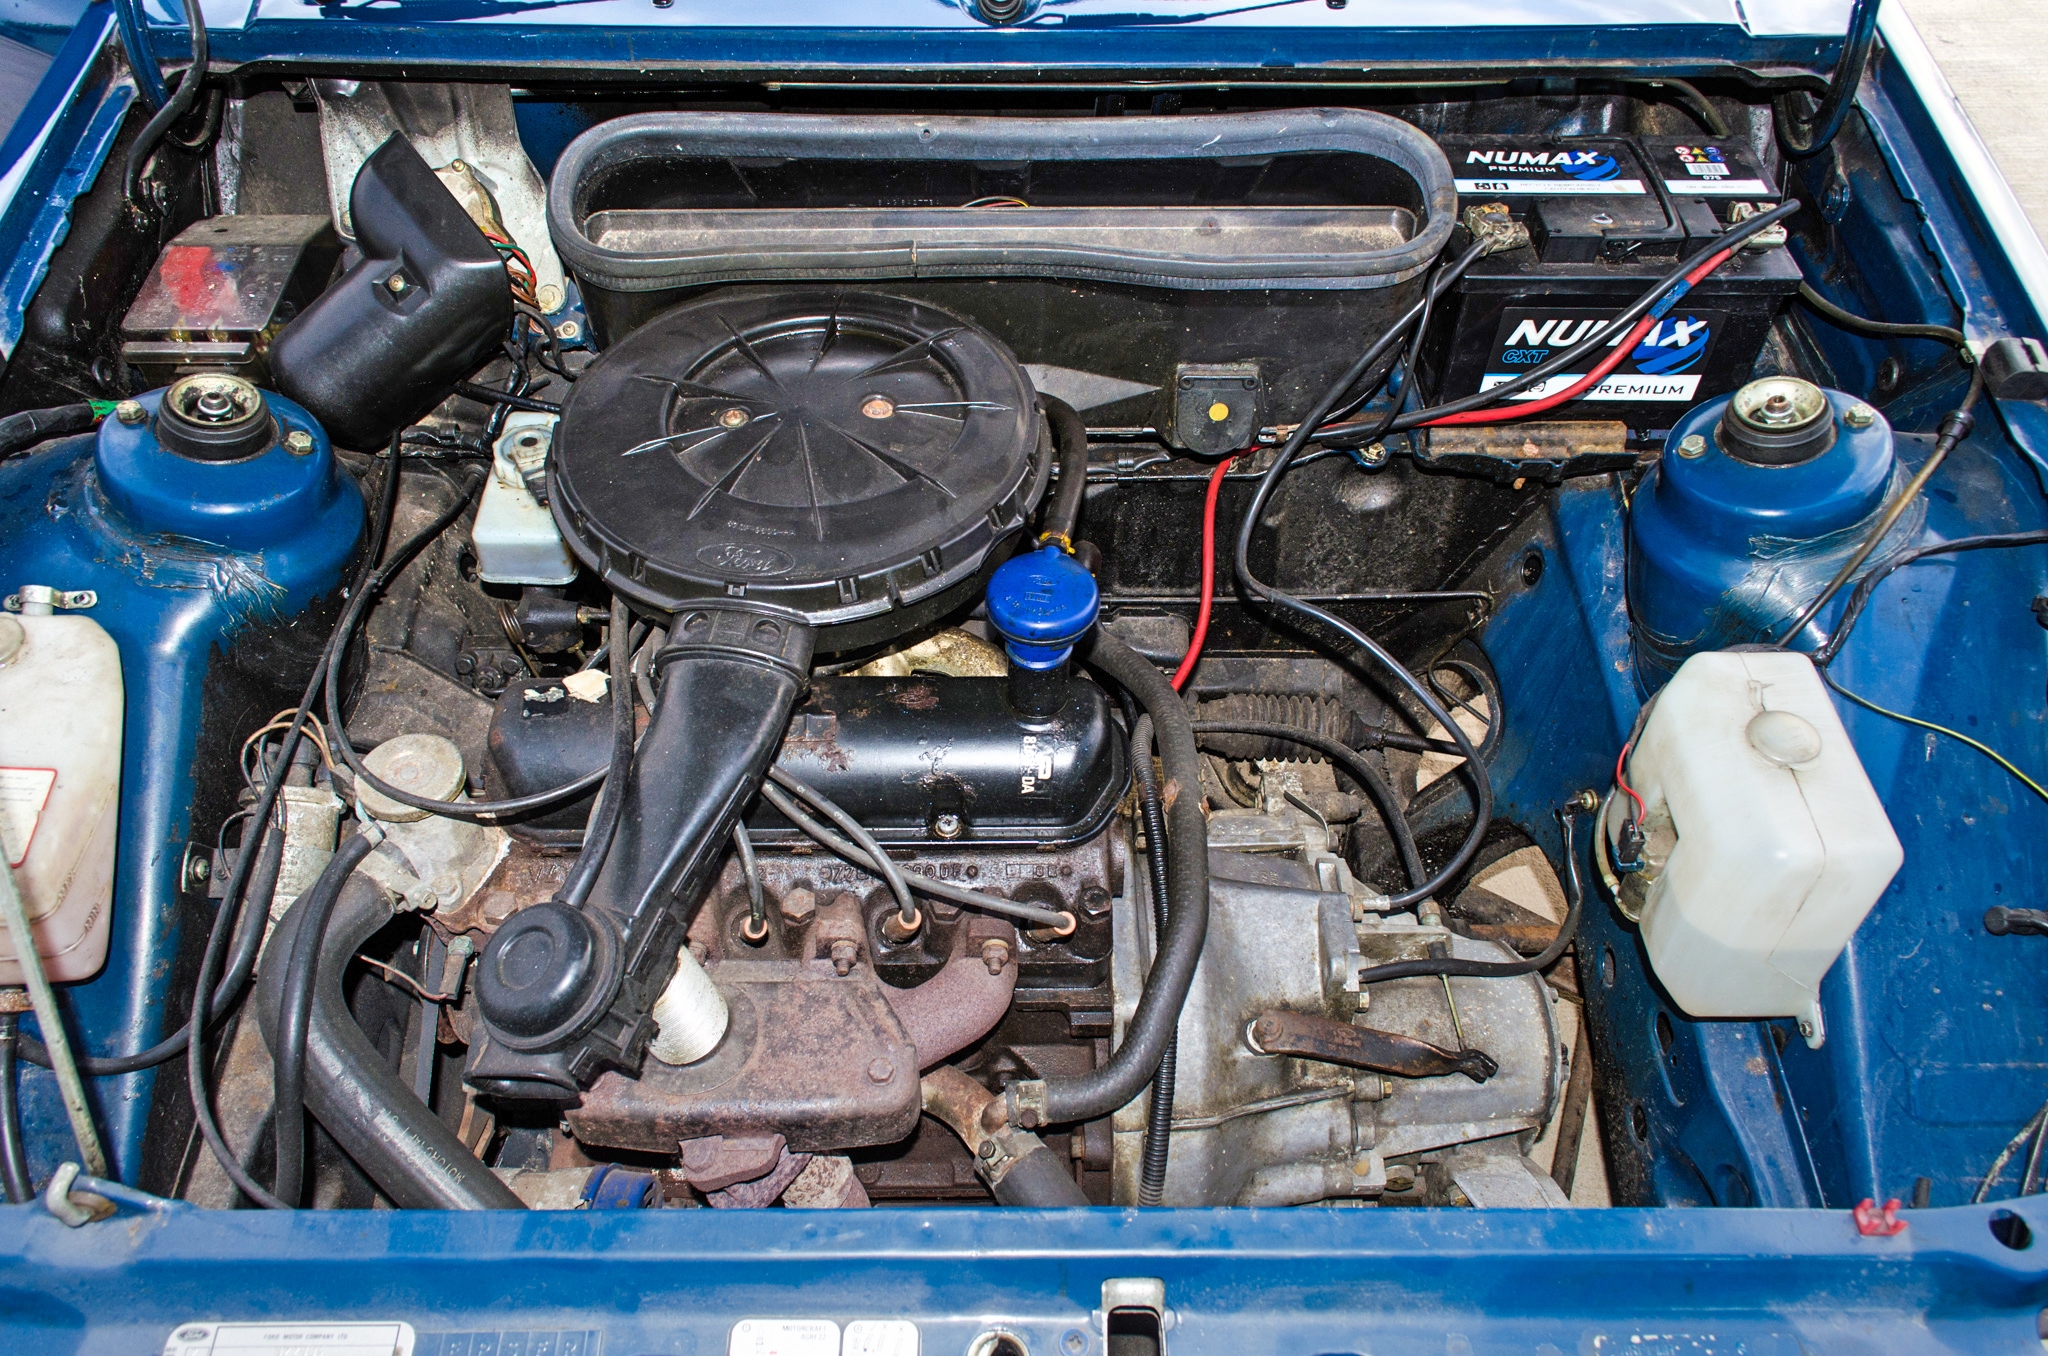 1982 Ford Escort 1.1 L 1100 cc 5 door hatchback 0nly 2017 miles - Image 45 of 50